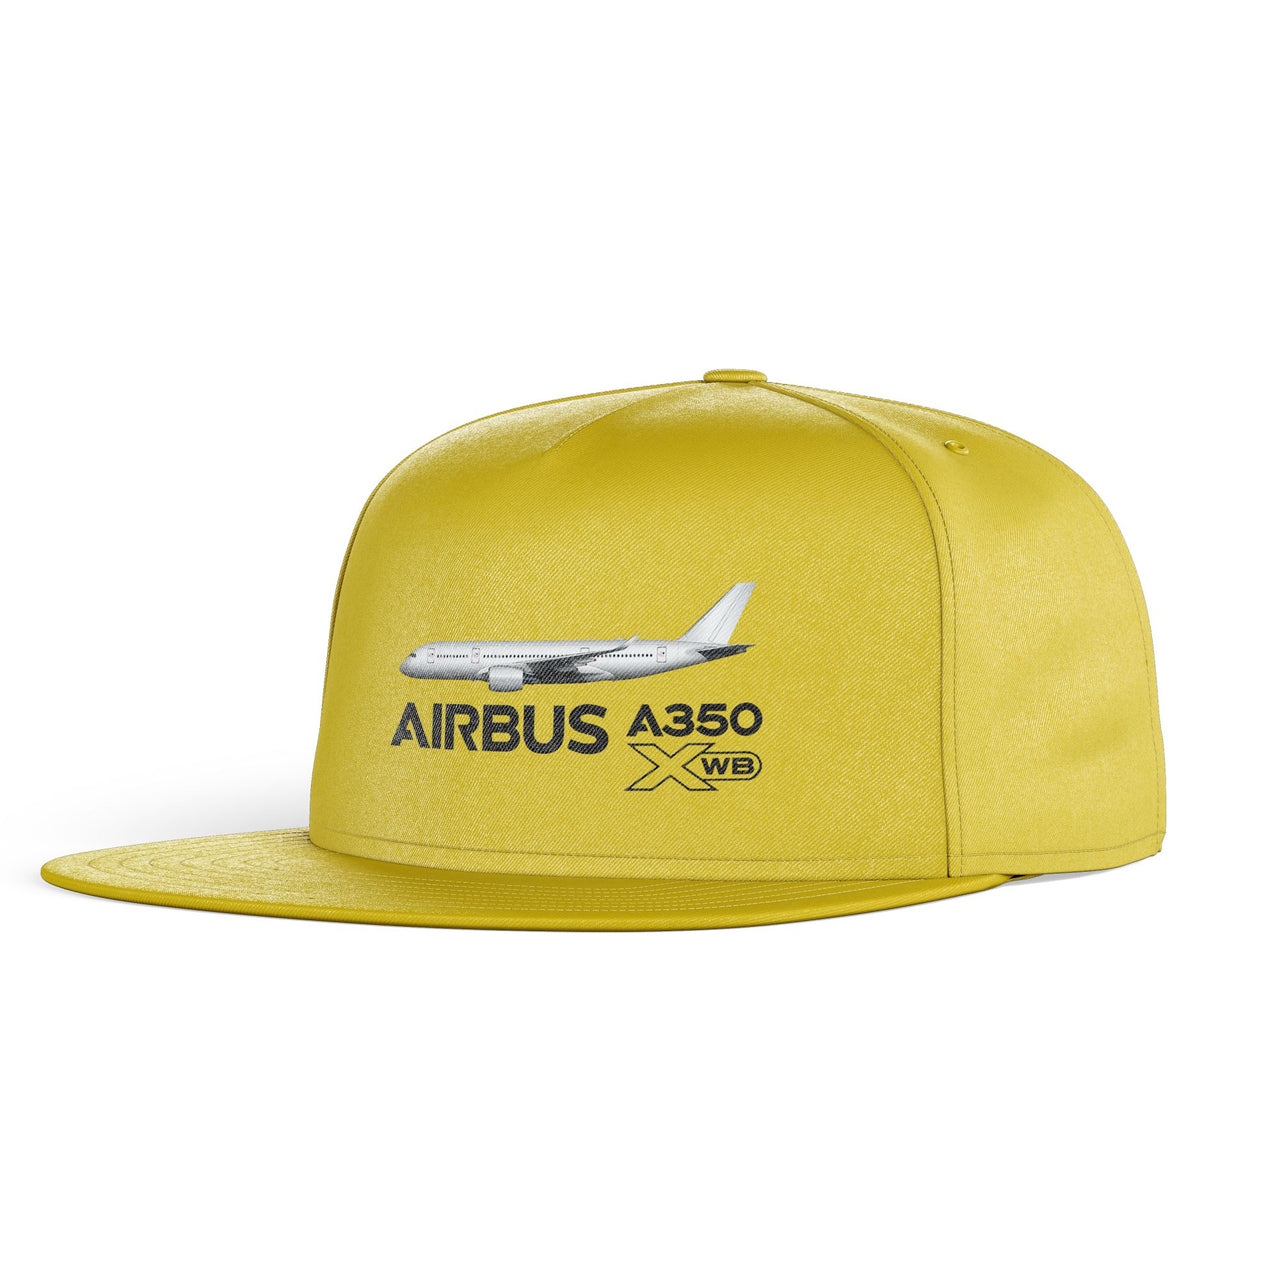 The Airbus A350 WXB Designed Snapback Caps & Hats